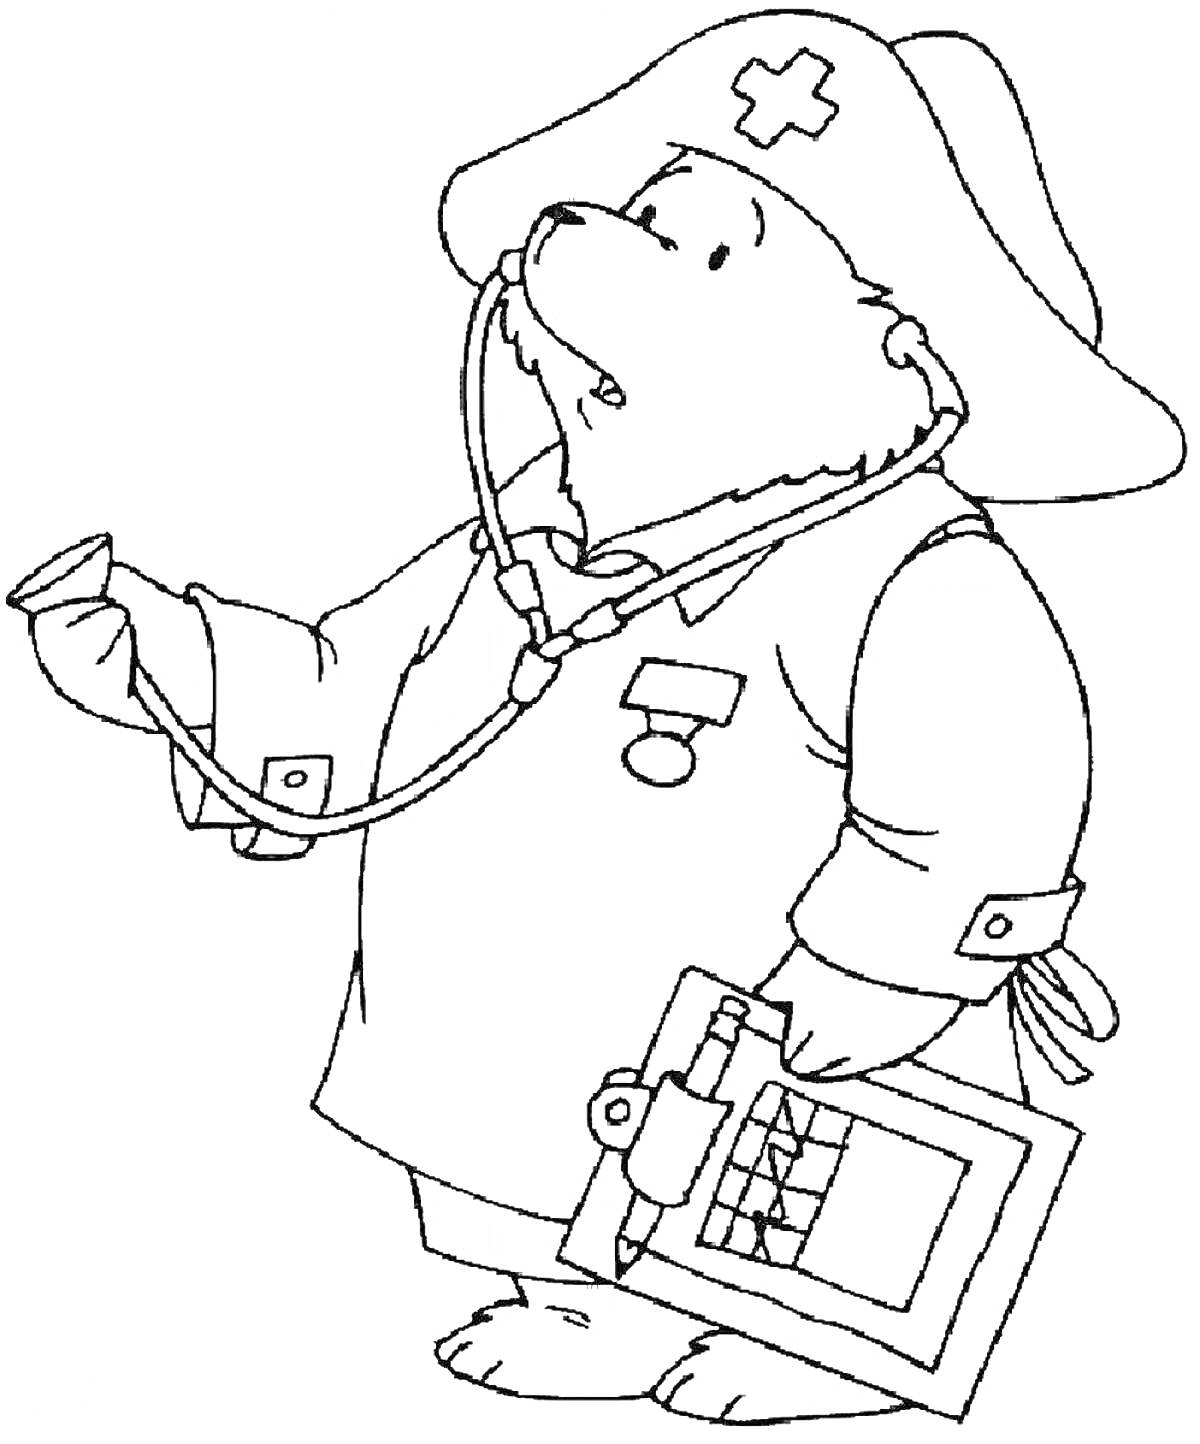 Раскраска Медвежонок-врач со стетоскопом, шляпой с крестом и планшетом с диаграммами